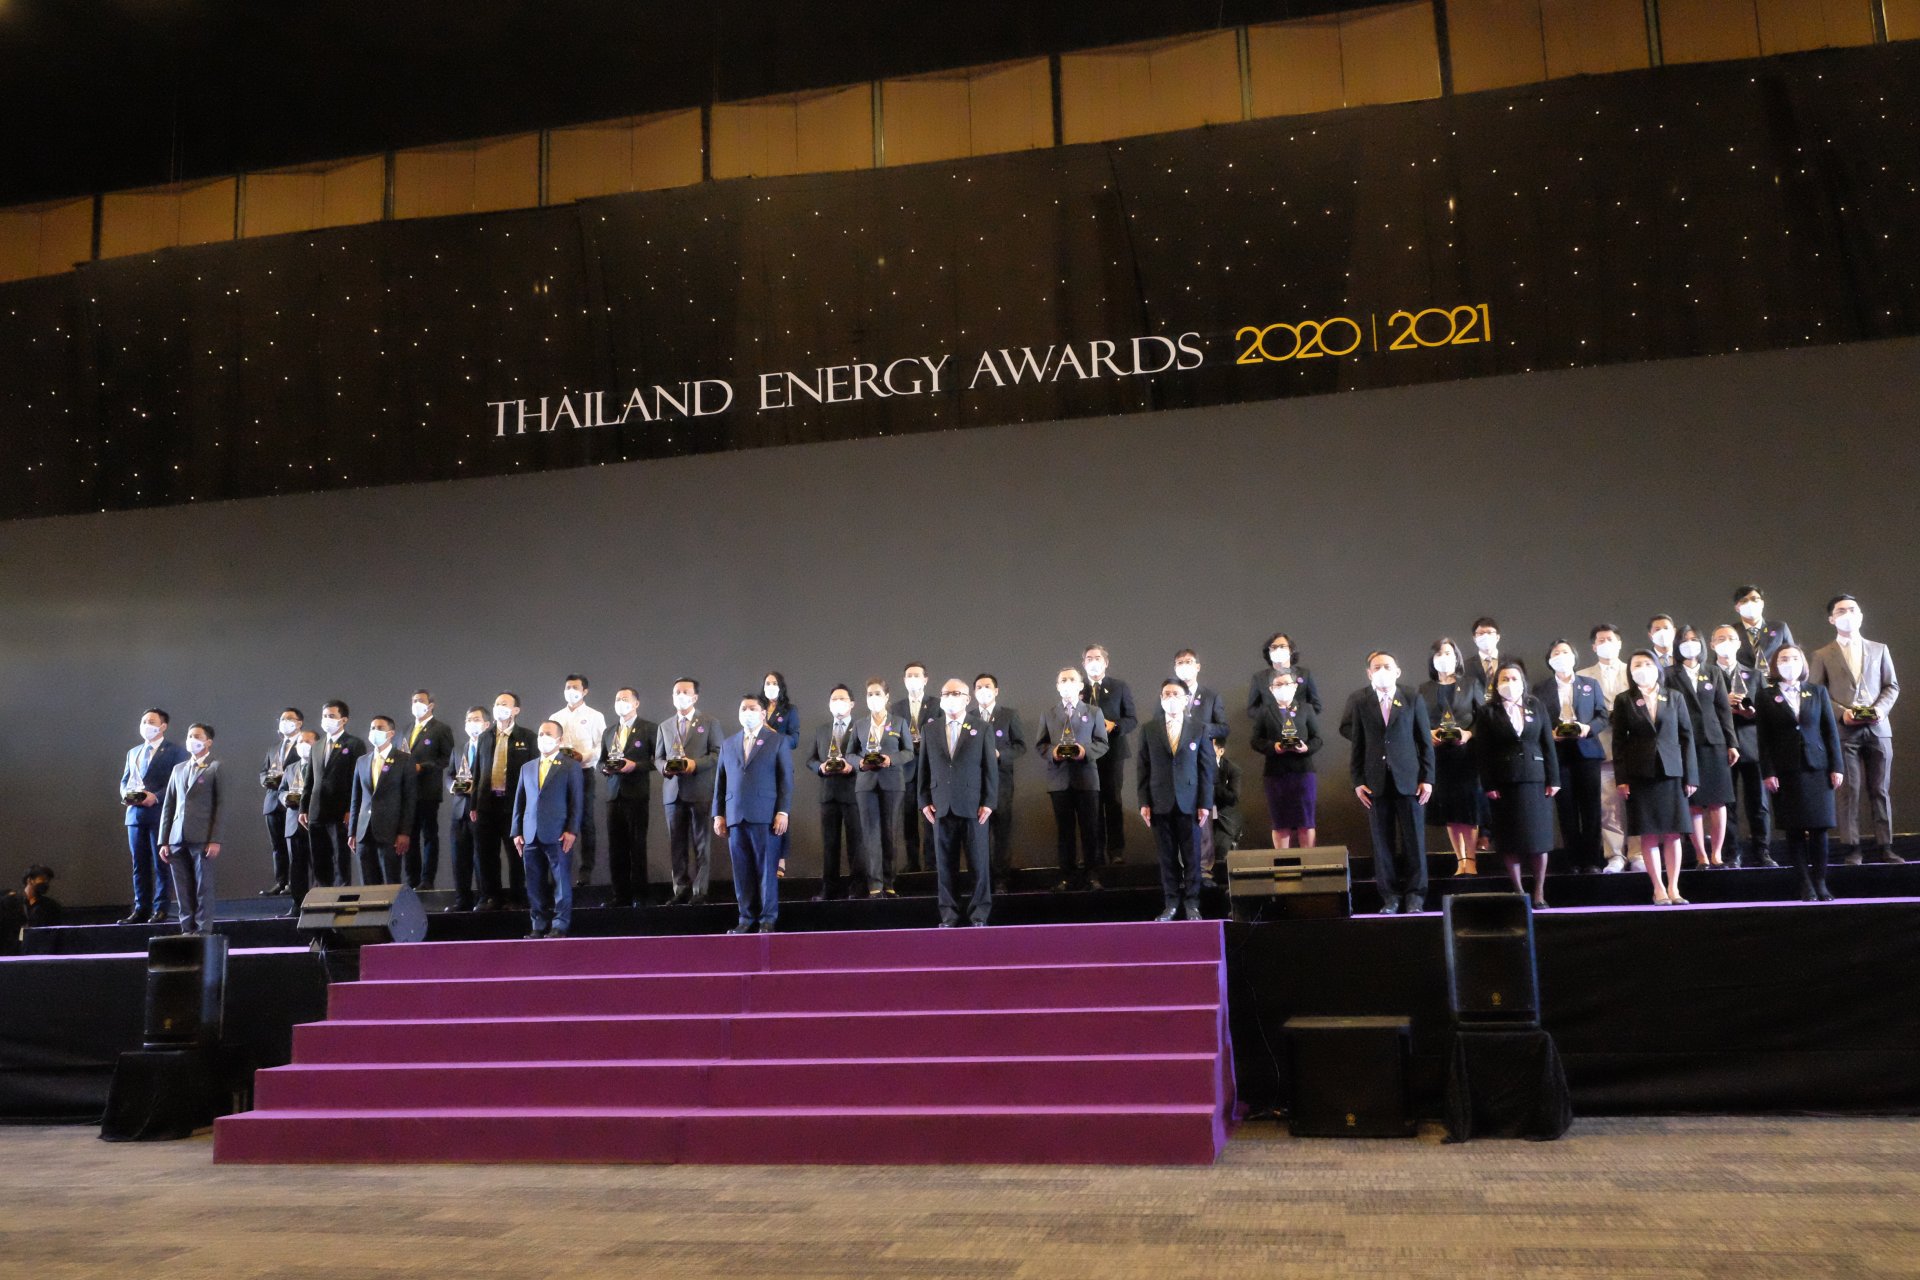 กระทรวงพลังงาน มอบรางวัล Thailand Energy Awards 2020 และ 2021 ก้าวสู่ทศวรรษที่ 3 ช่วยประหยัดพลังงานรวม 10,526 ล้านบาท ลดคาร์บอนช่วยโลก 2.02 ล้านตันสร้างไทยผงาดเป็นผู้นำด้านพลังงานระดับอาเซียนอย่างยั่งยืน